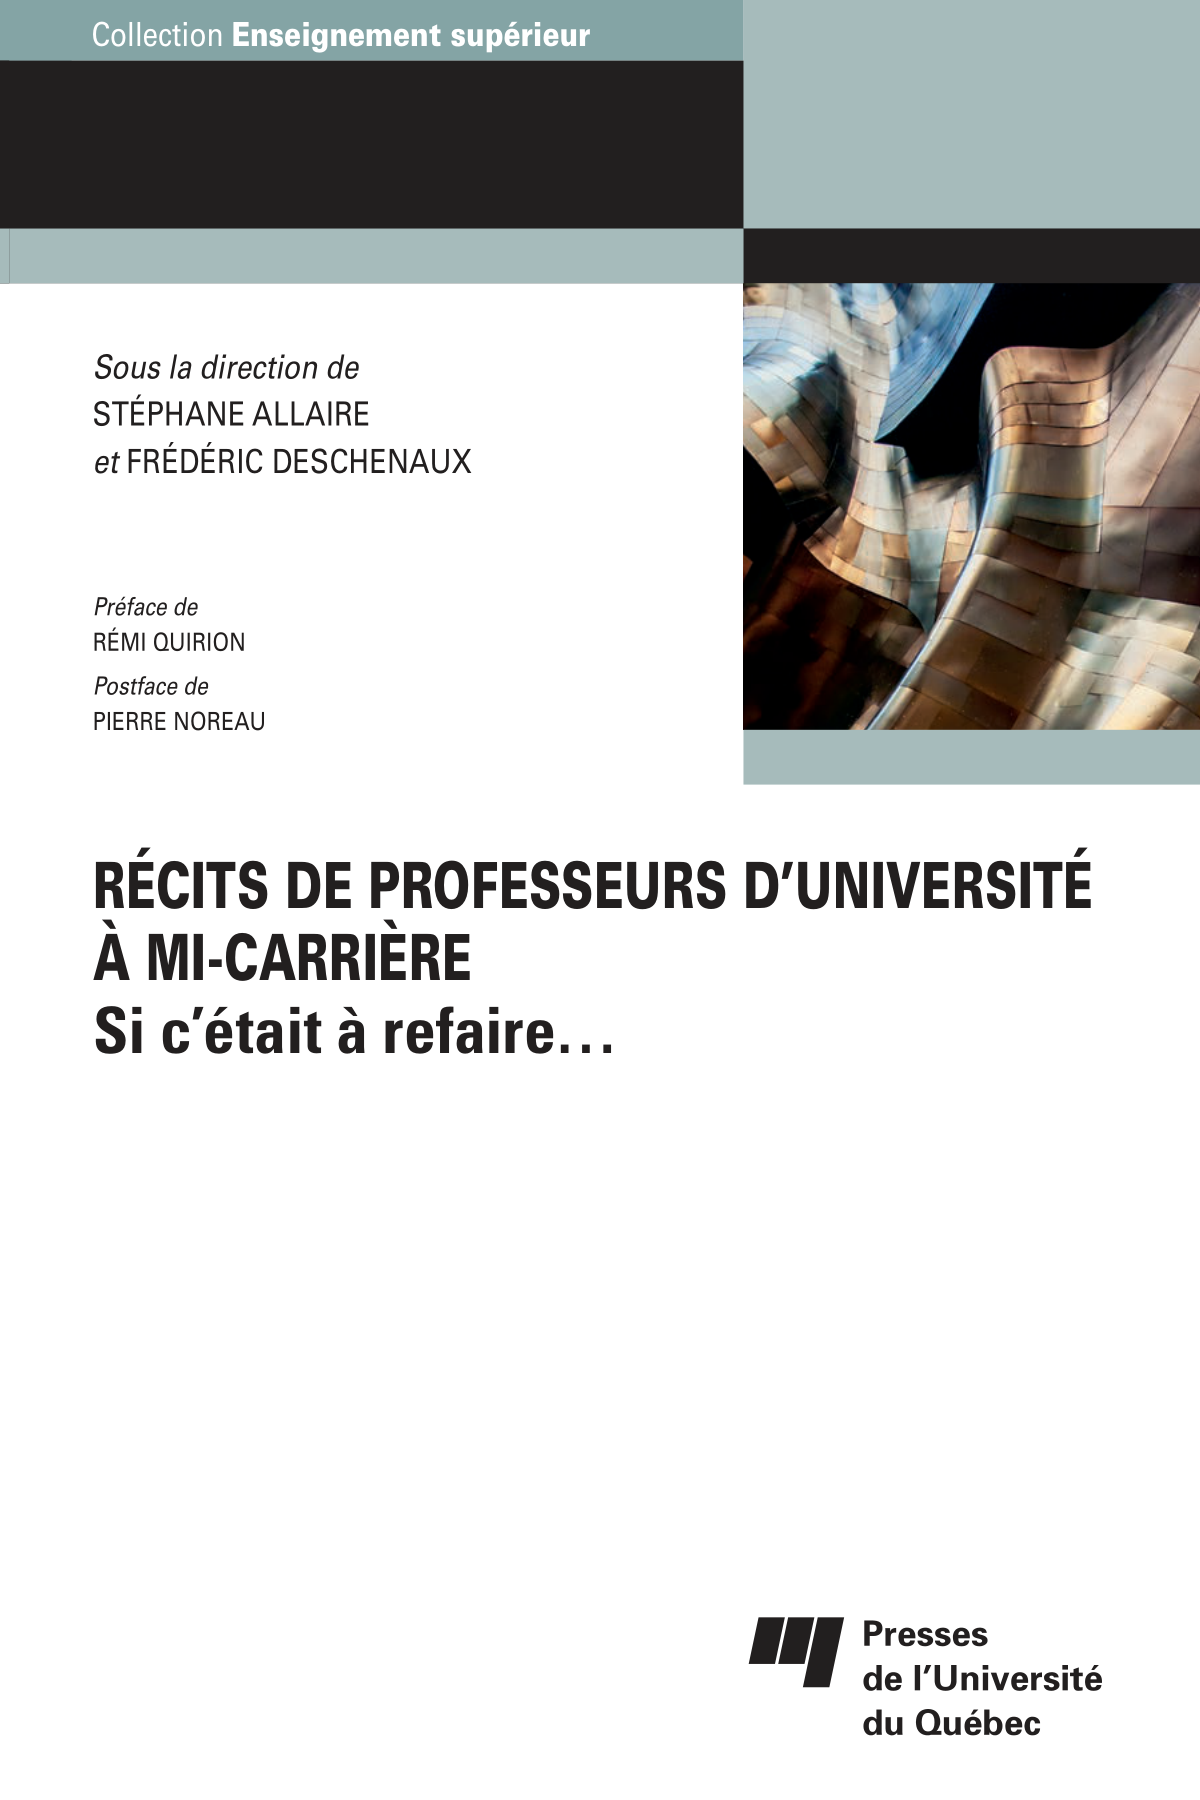 Couverture du livre "Récits de professeurs d’université à mi-carrière"